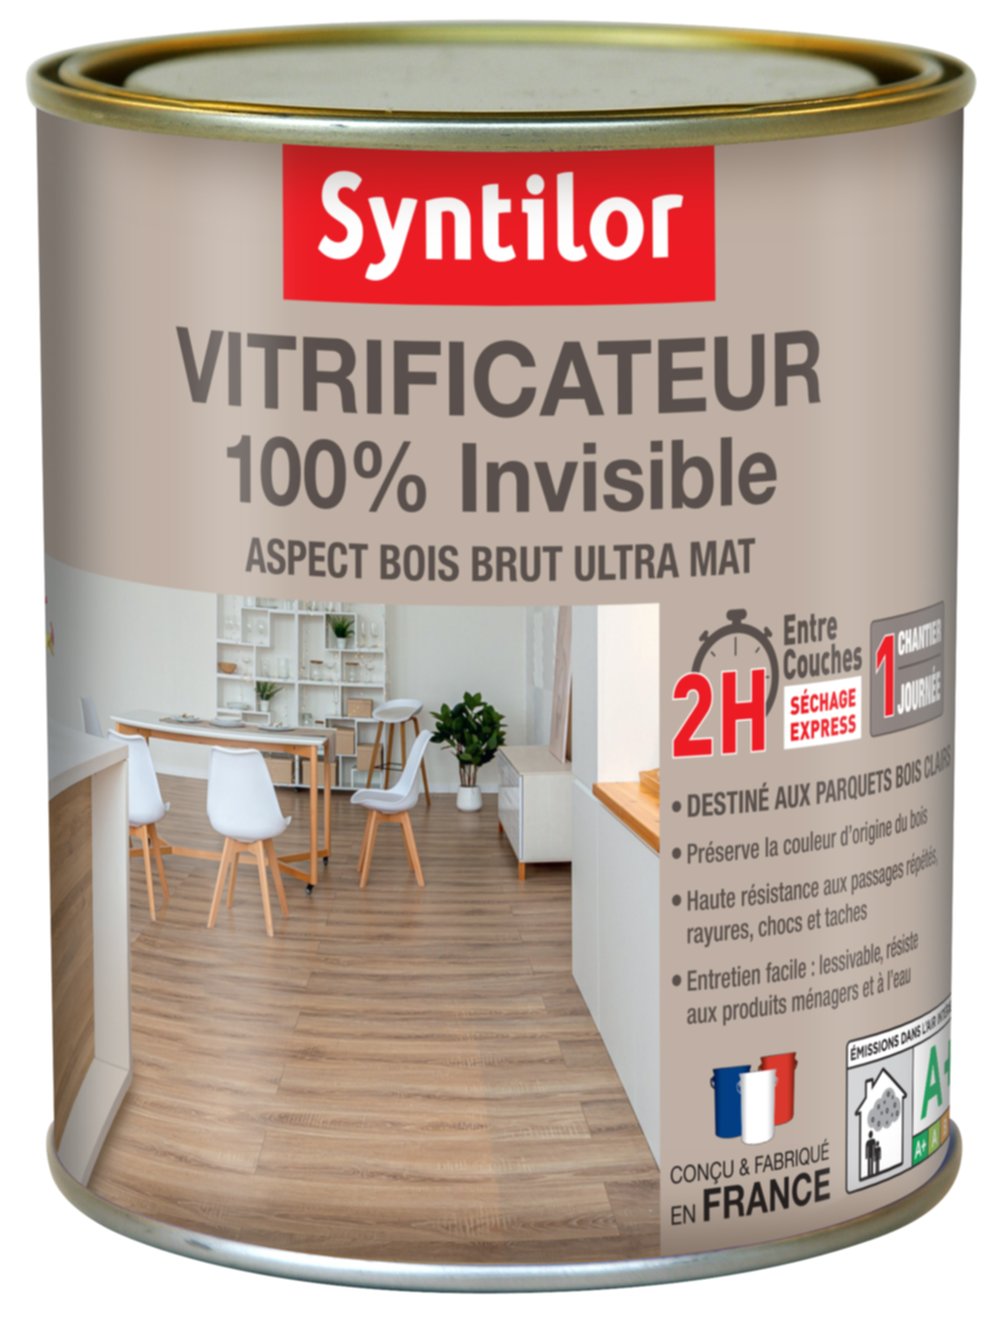 Vitrificateur 100% Invisible 0,75L Syntilor